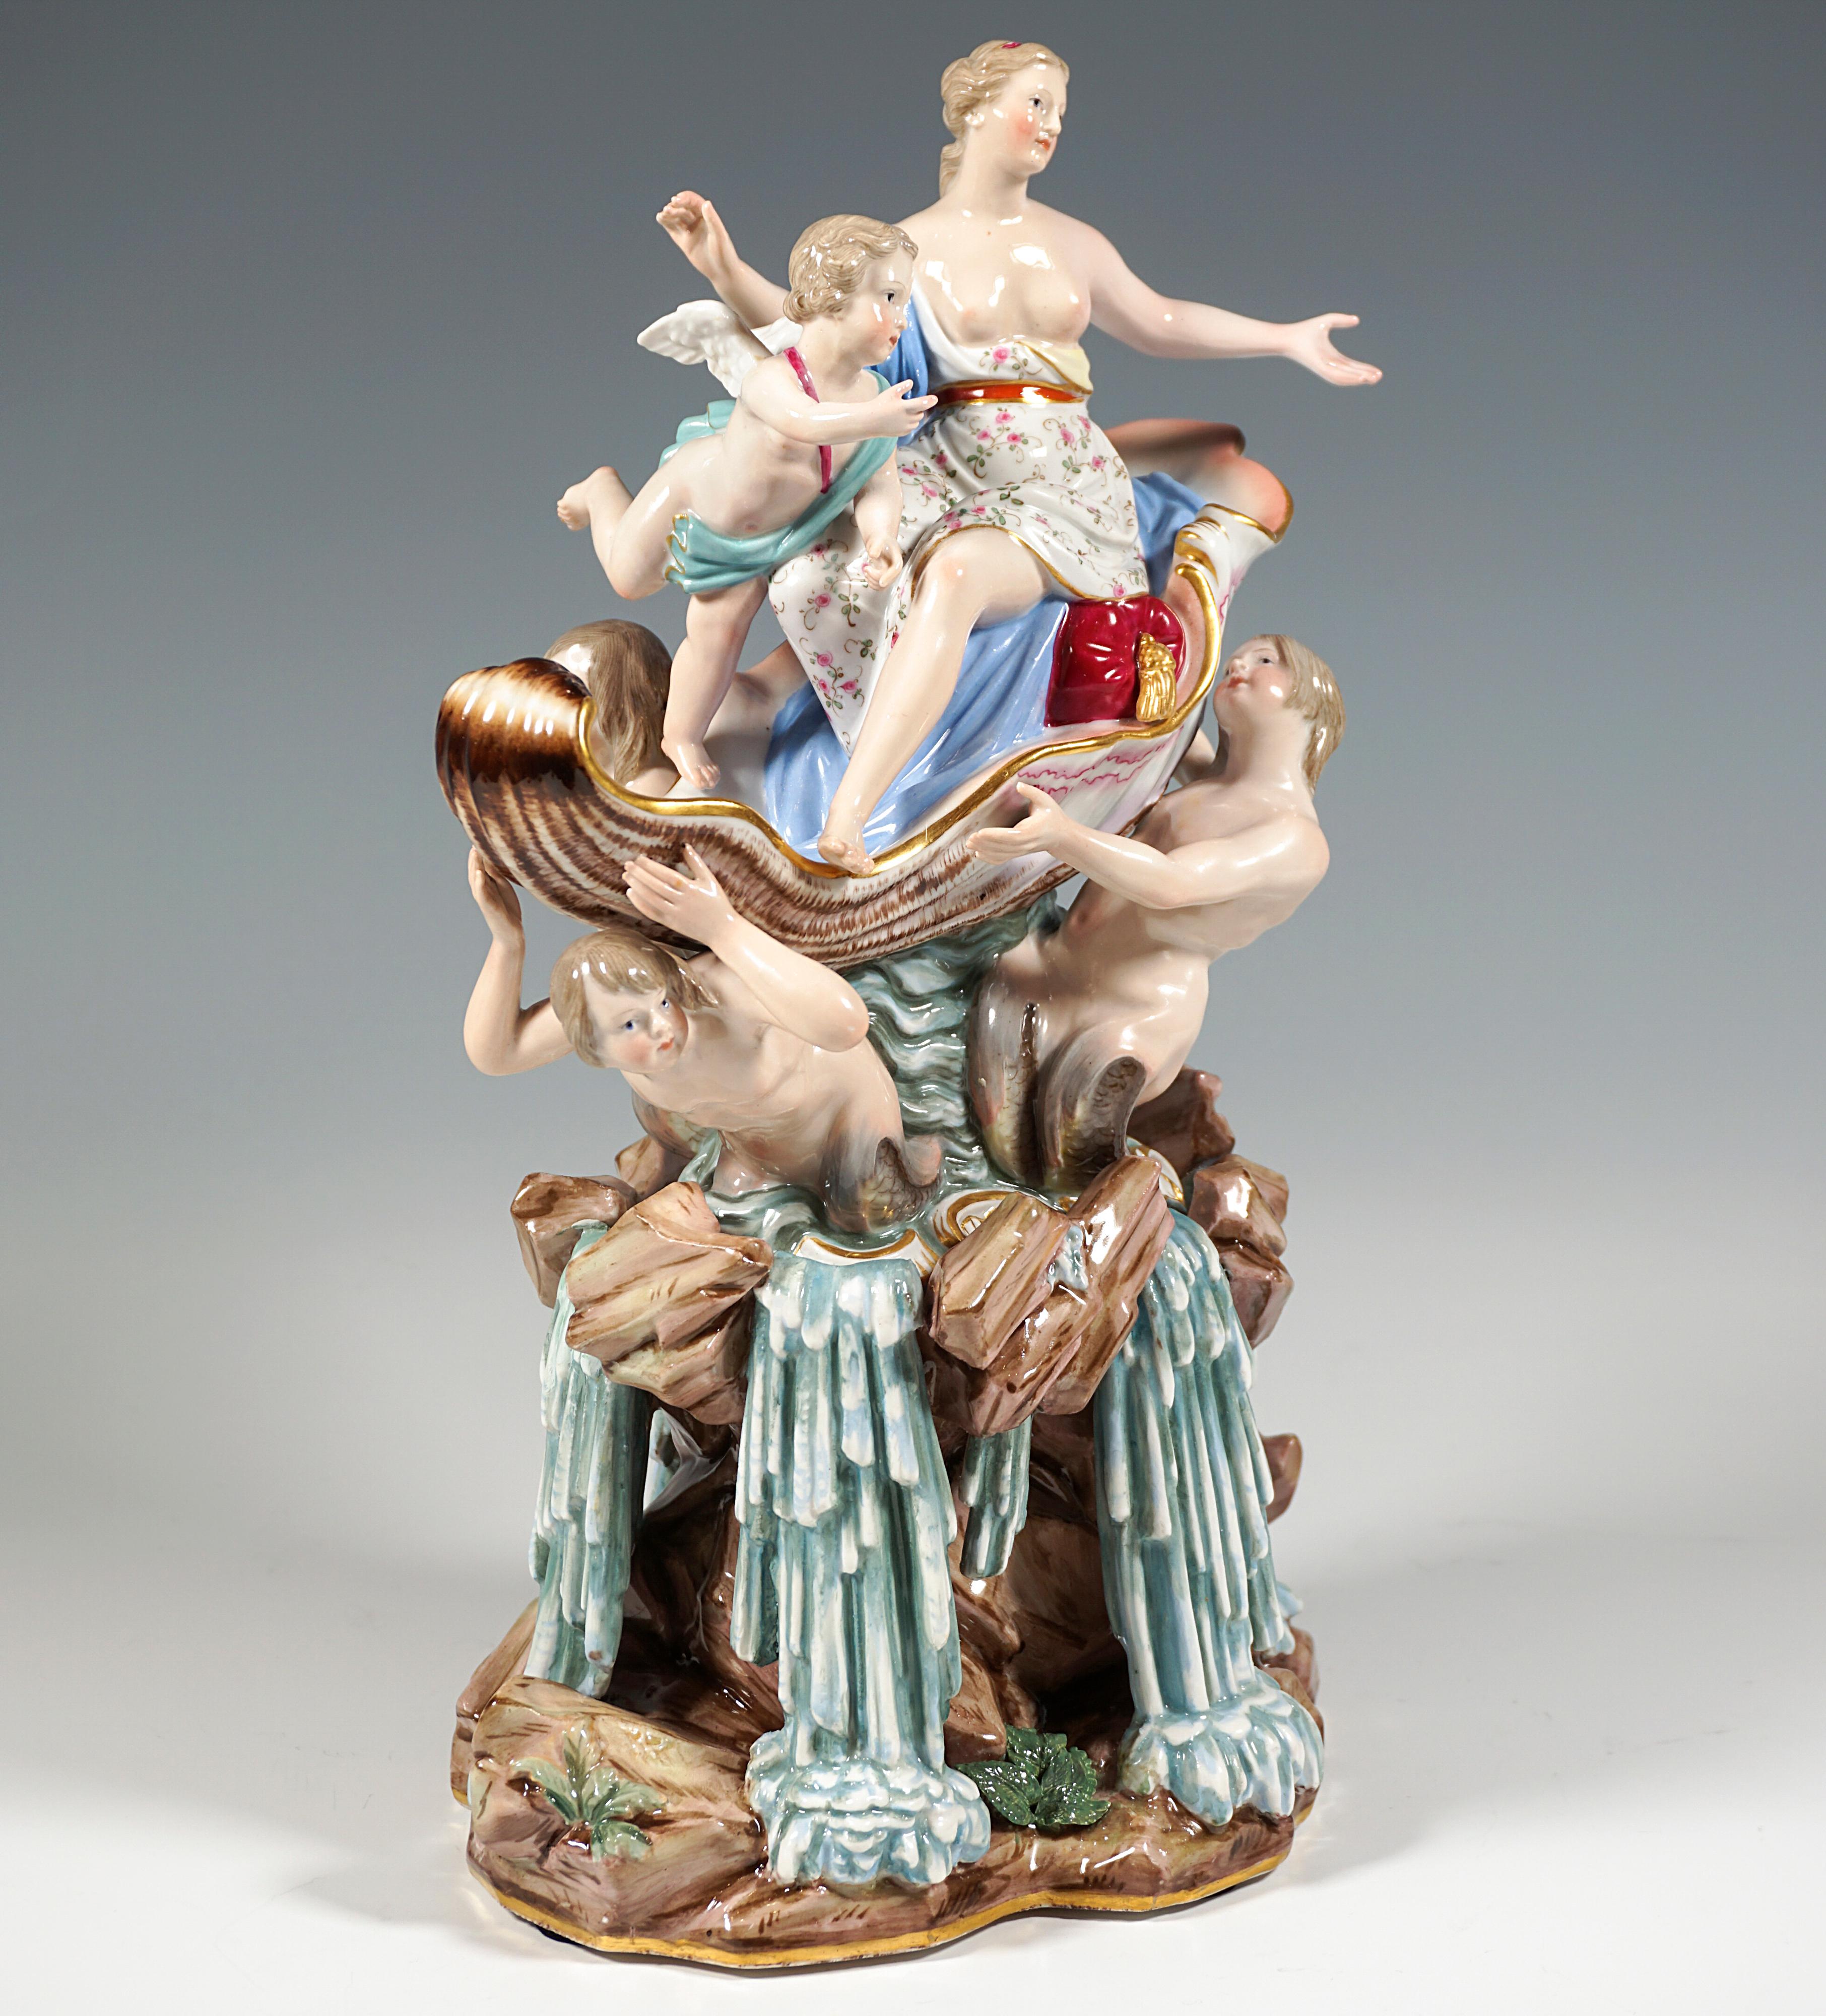 Seltene und ausgezeichnete Porzellanskulptur:
Darstellung der Venus, der römischen Göttin der Liebe und Schönheit (griechisch: Aphrodite), als junge Frau mit im Nacken zusammengebundenem Haar, bedeckt von einem weich drapierten Schal, wobei der